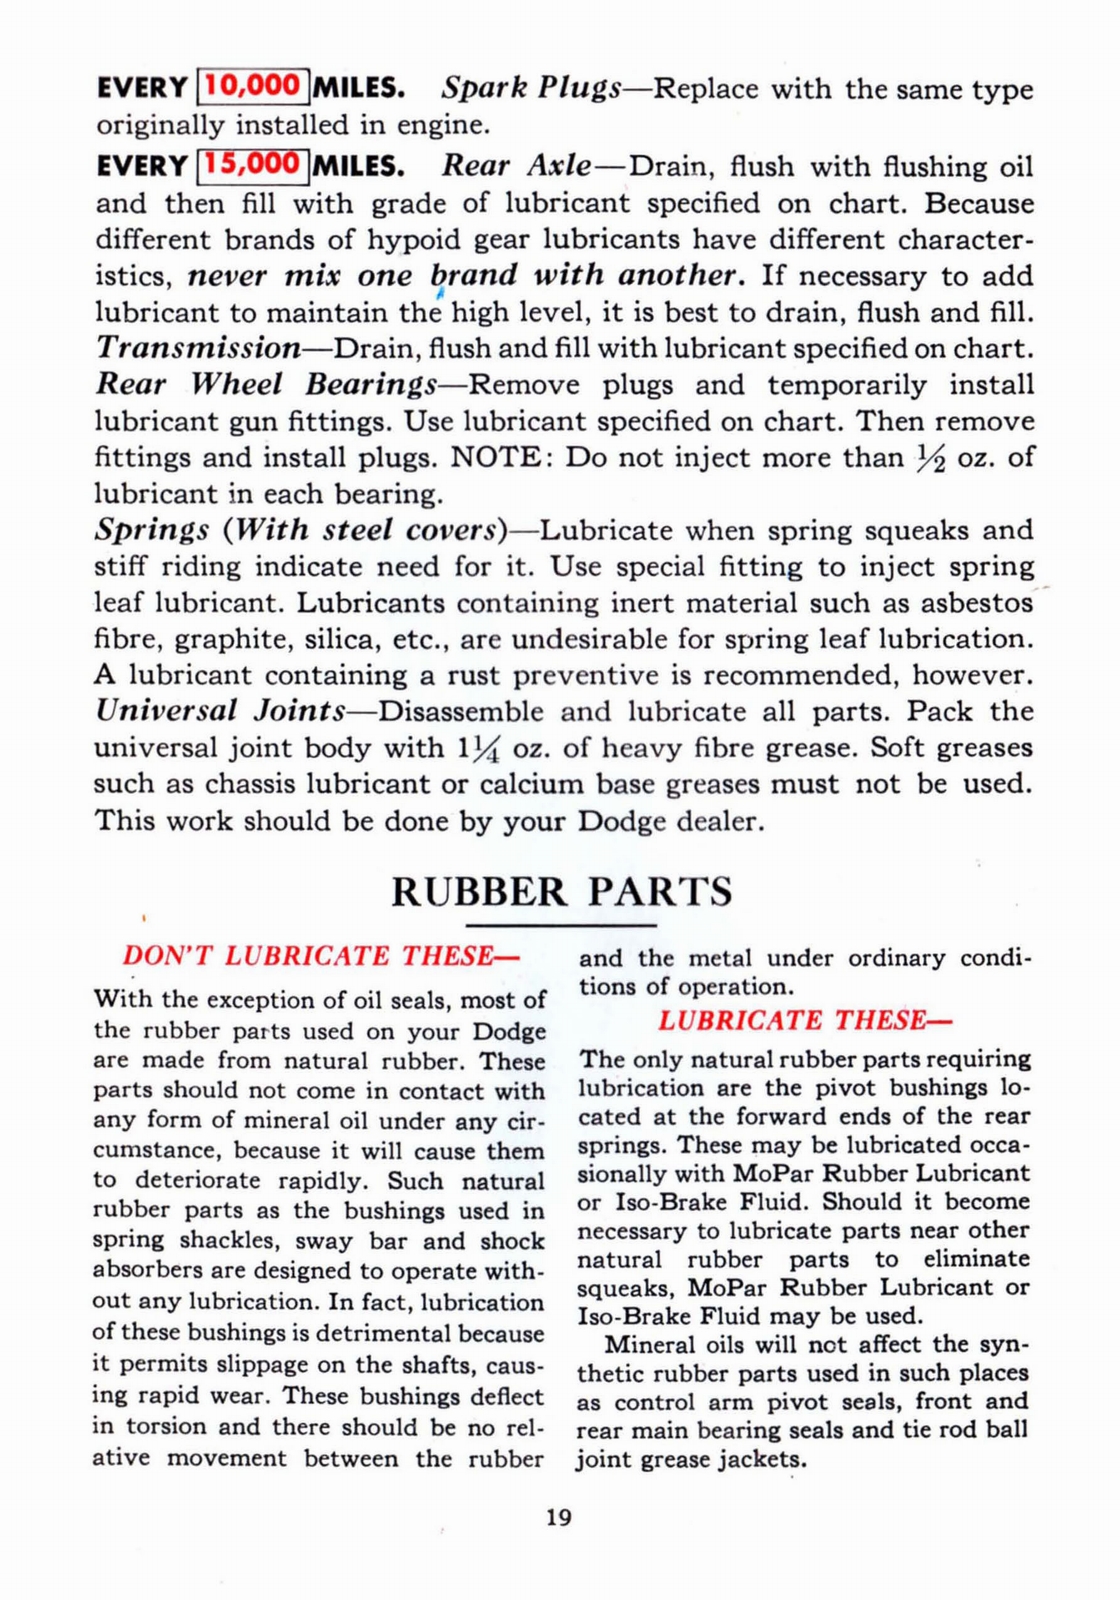 n_1941 Dodge Owners Manual-19.jpg